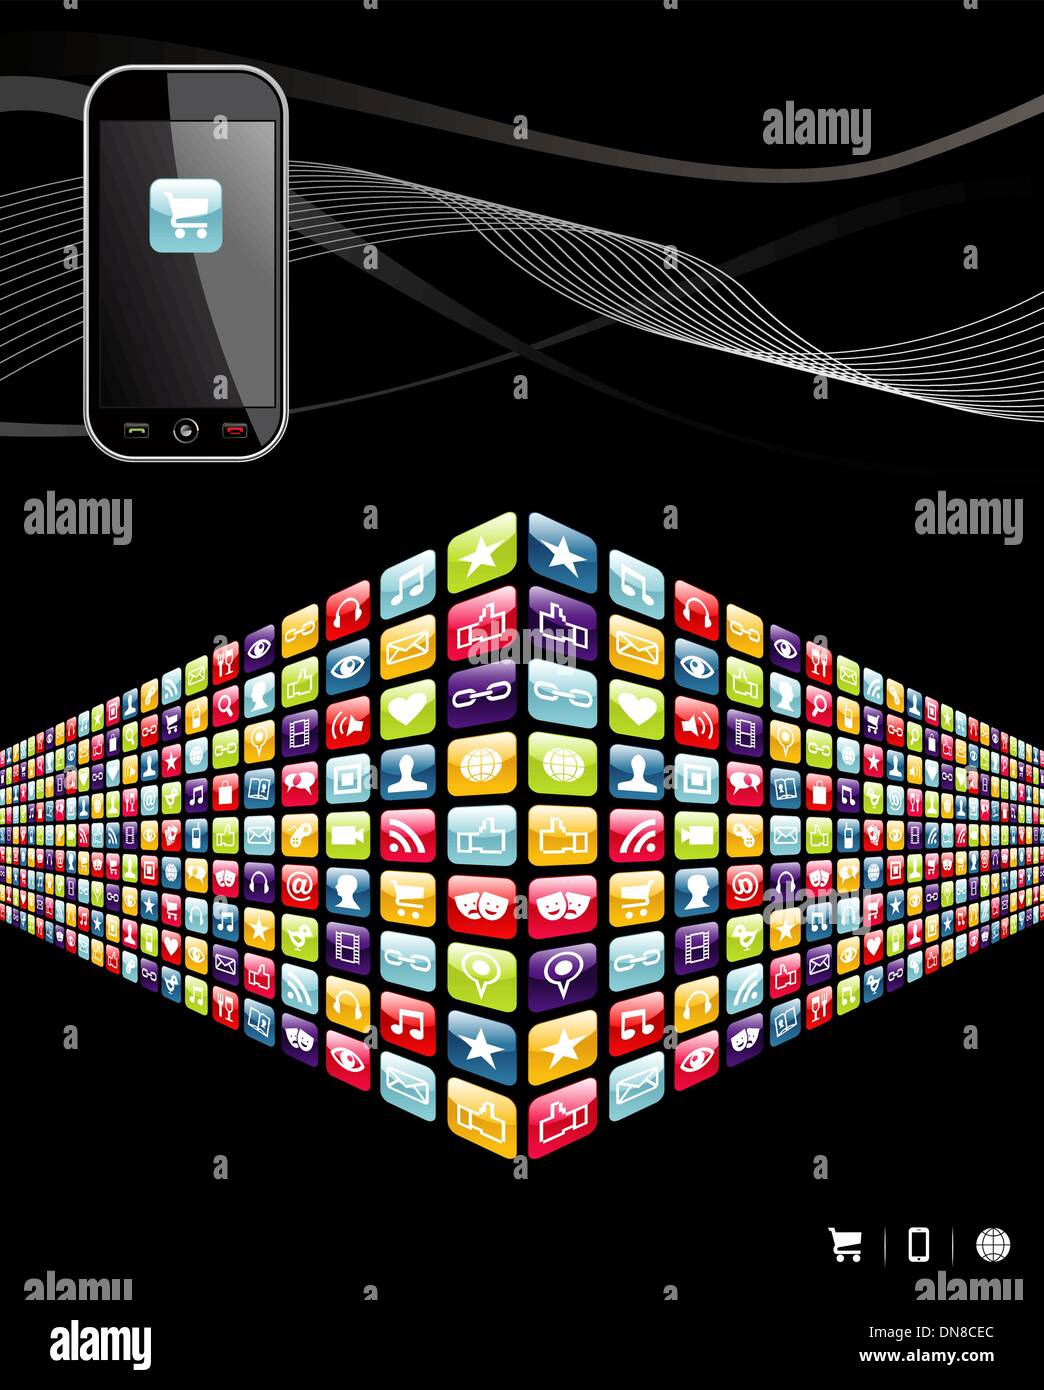 Les icônes des applications téléphone mobile mondial wall Illustration de Vecteur